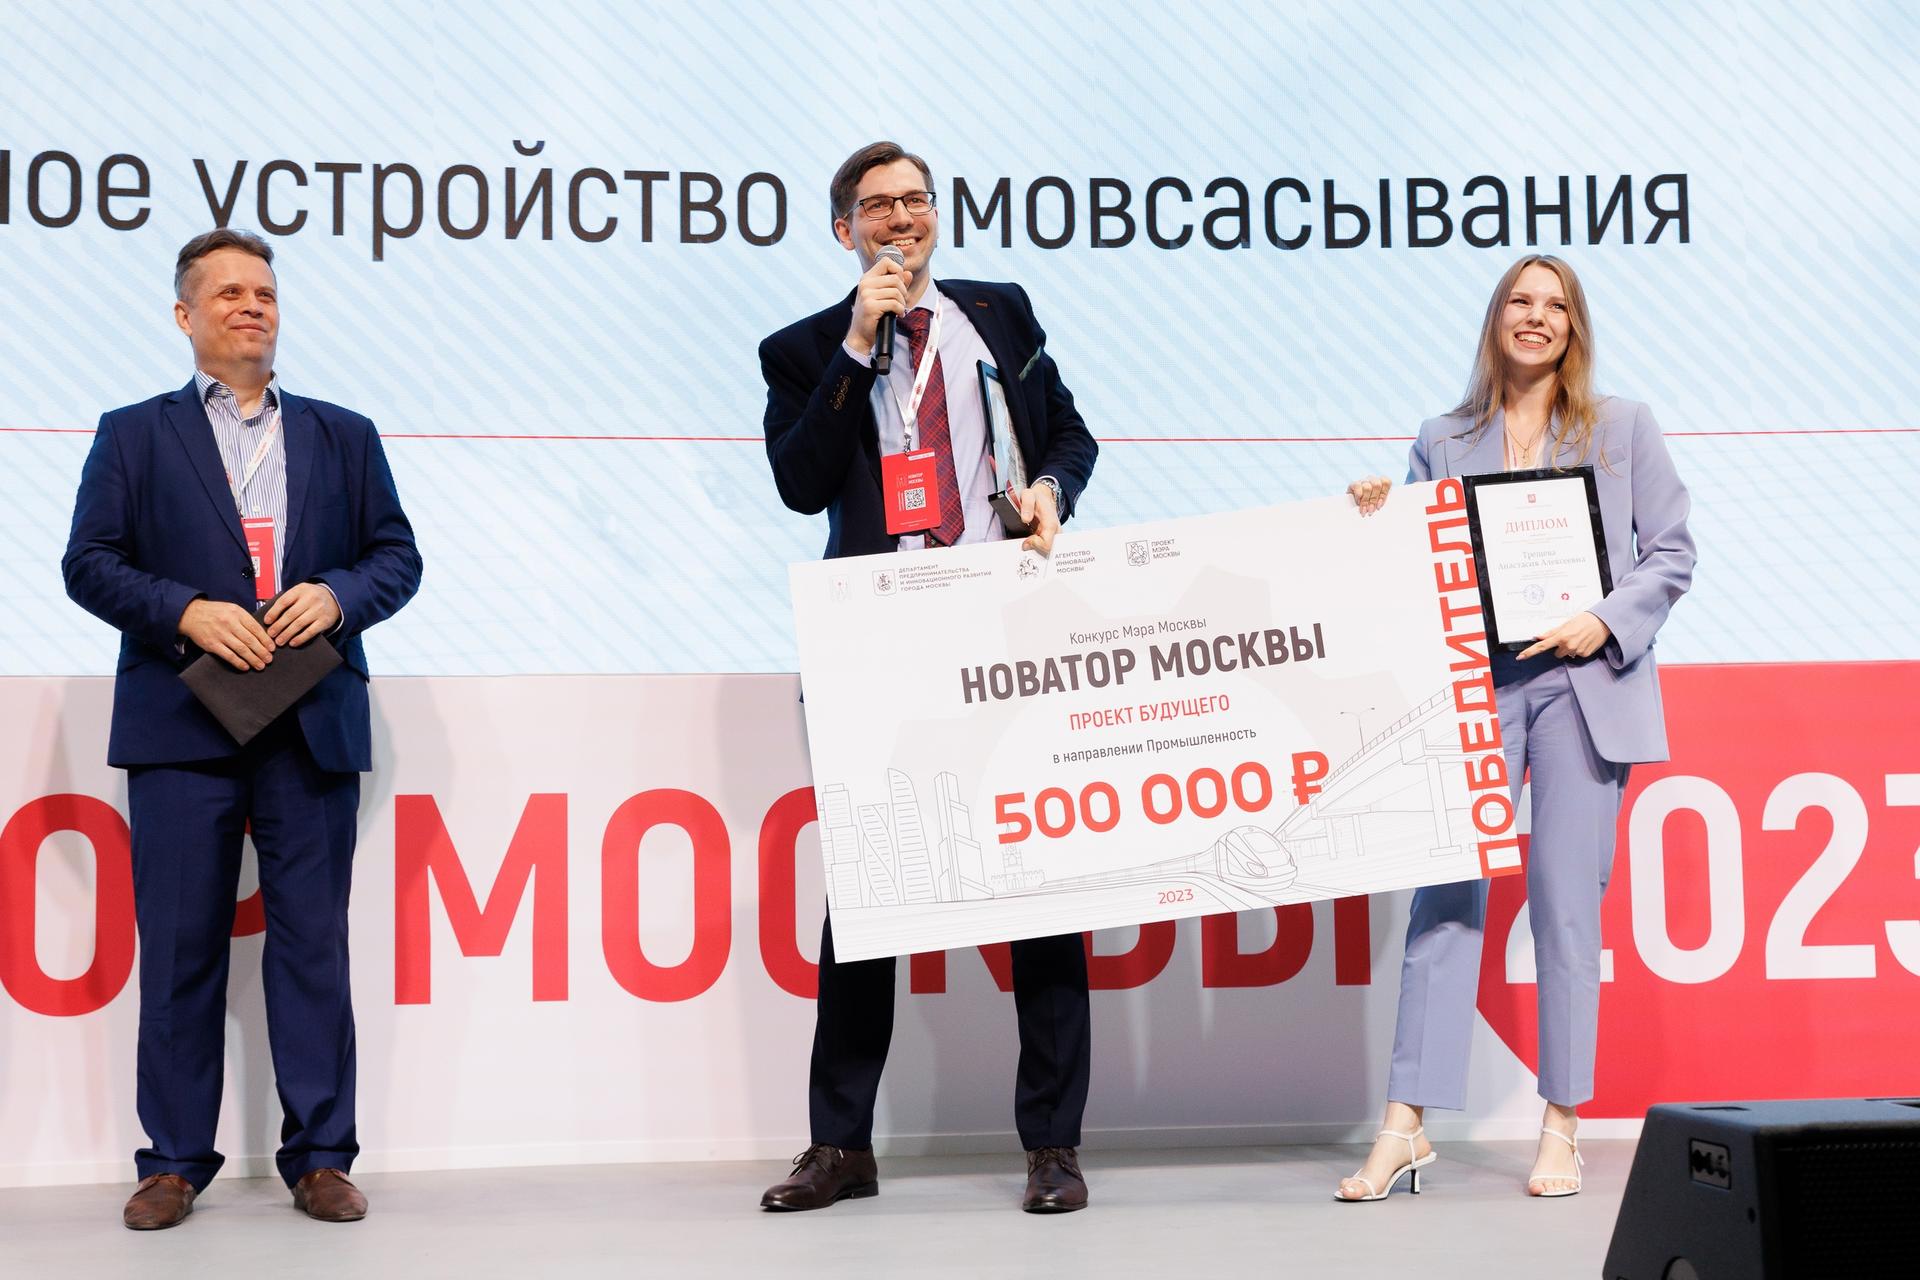 Победитель номинации «Проект будущего» в направлении «Промышленность» Трещева Анастасия